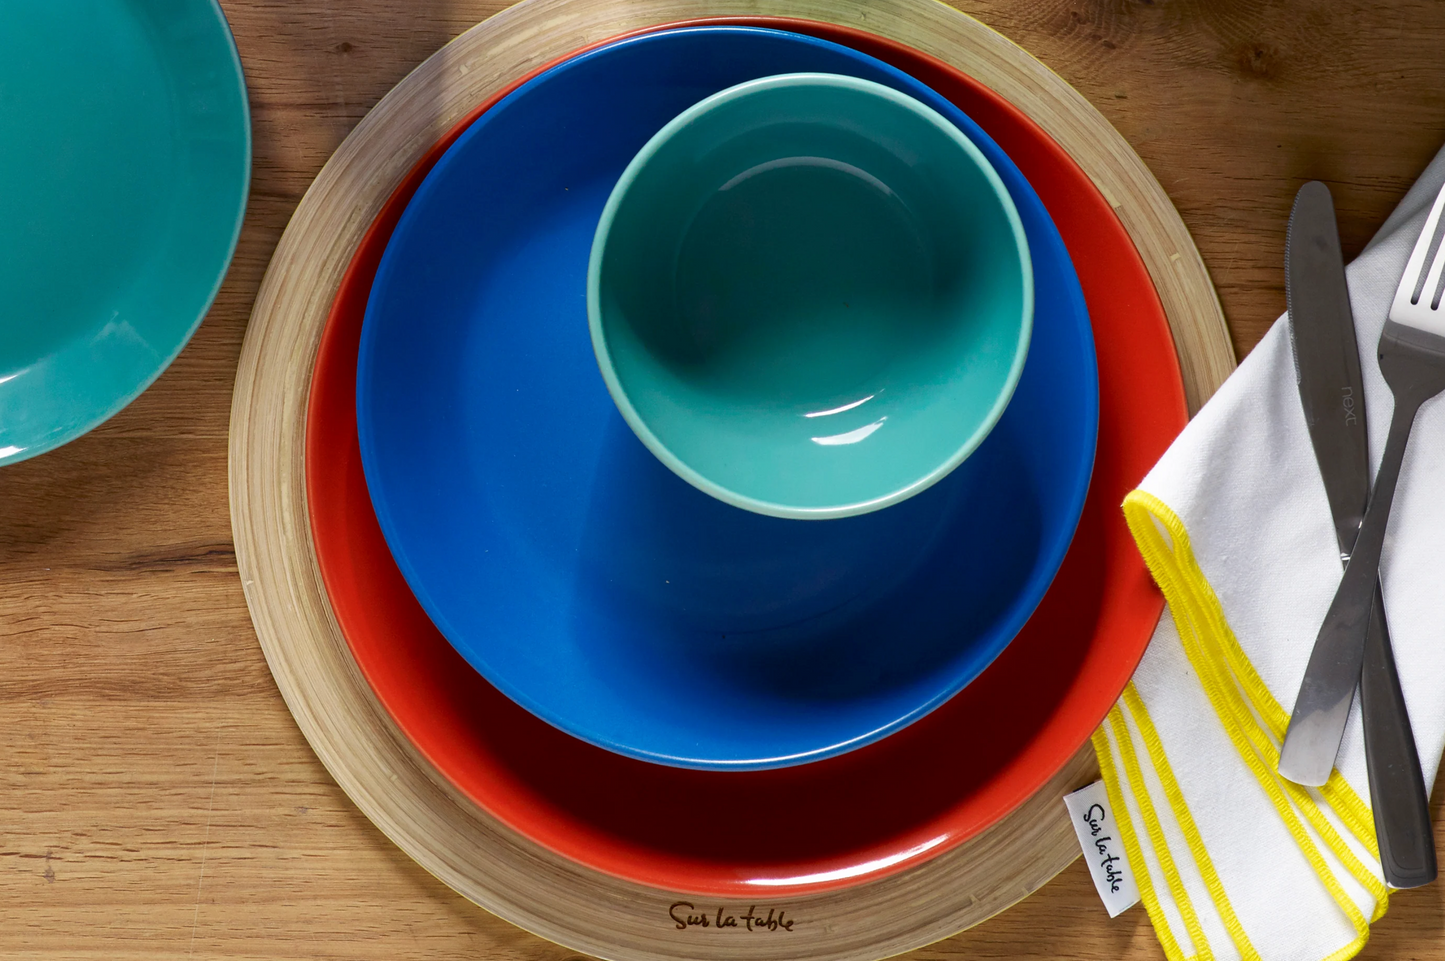 Sur La Table Colour Me Happy Pasta Plate, Blue